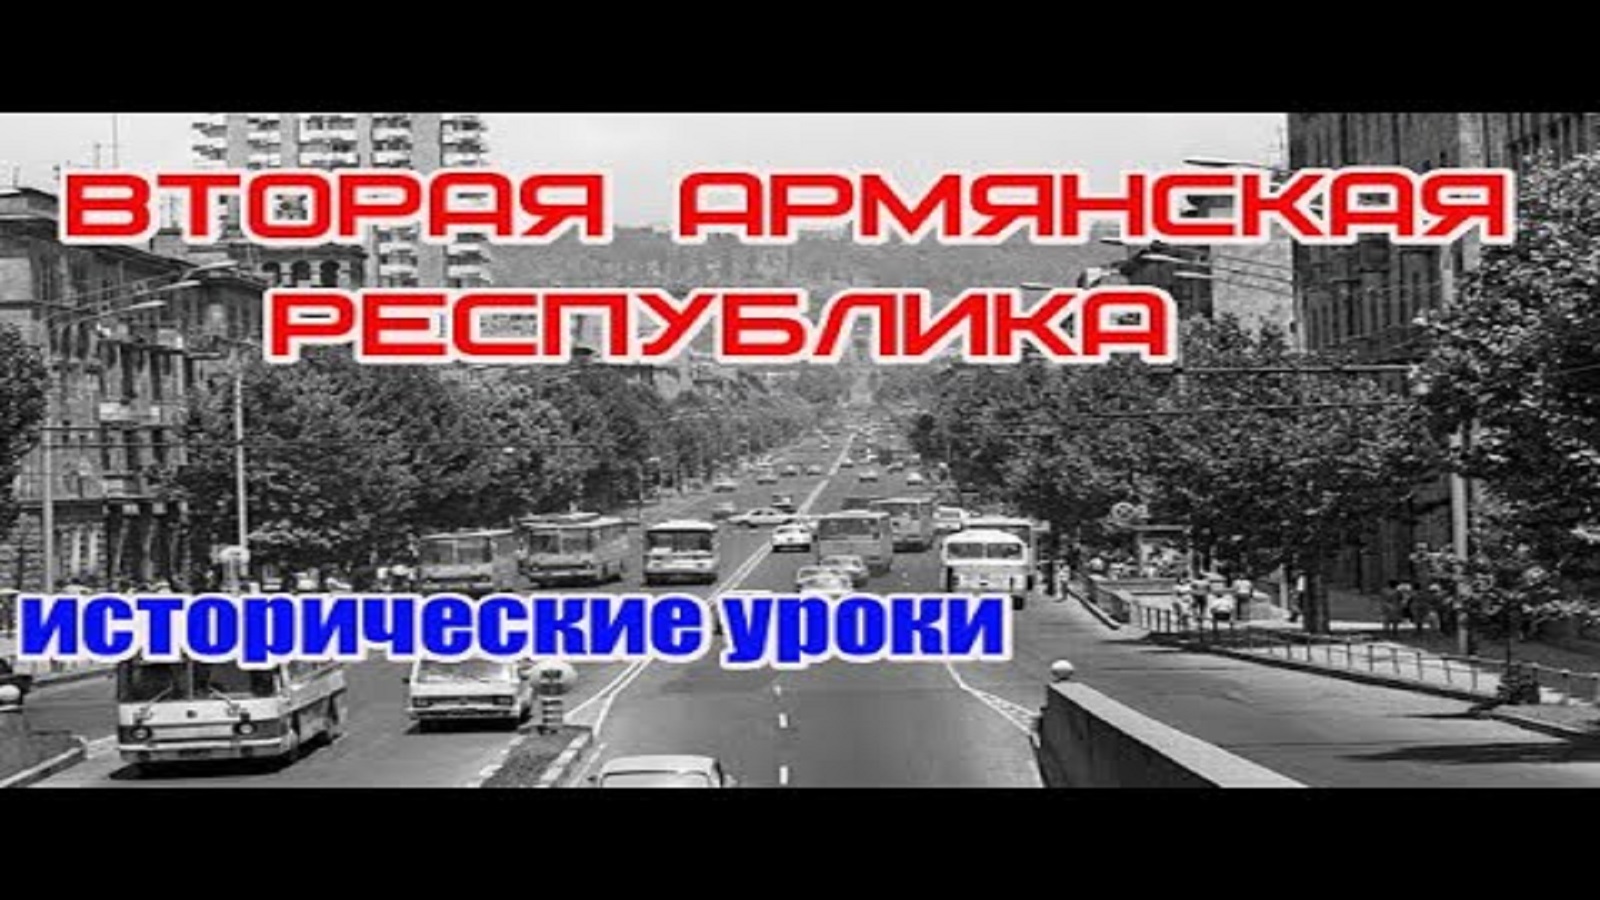 Вторая Армянская Республика — исторические уроки/1920-1991/HAYK media